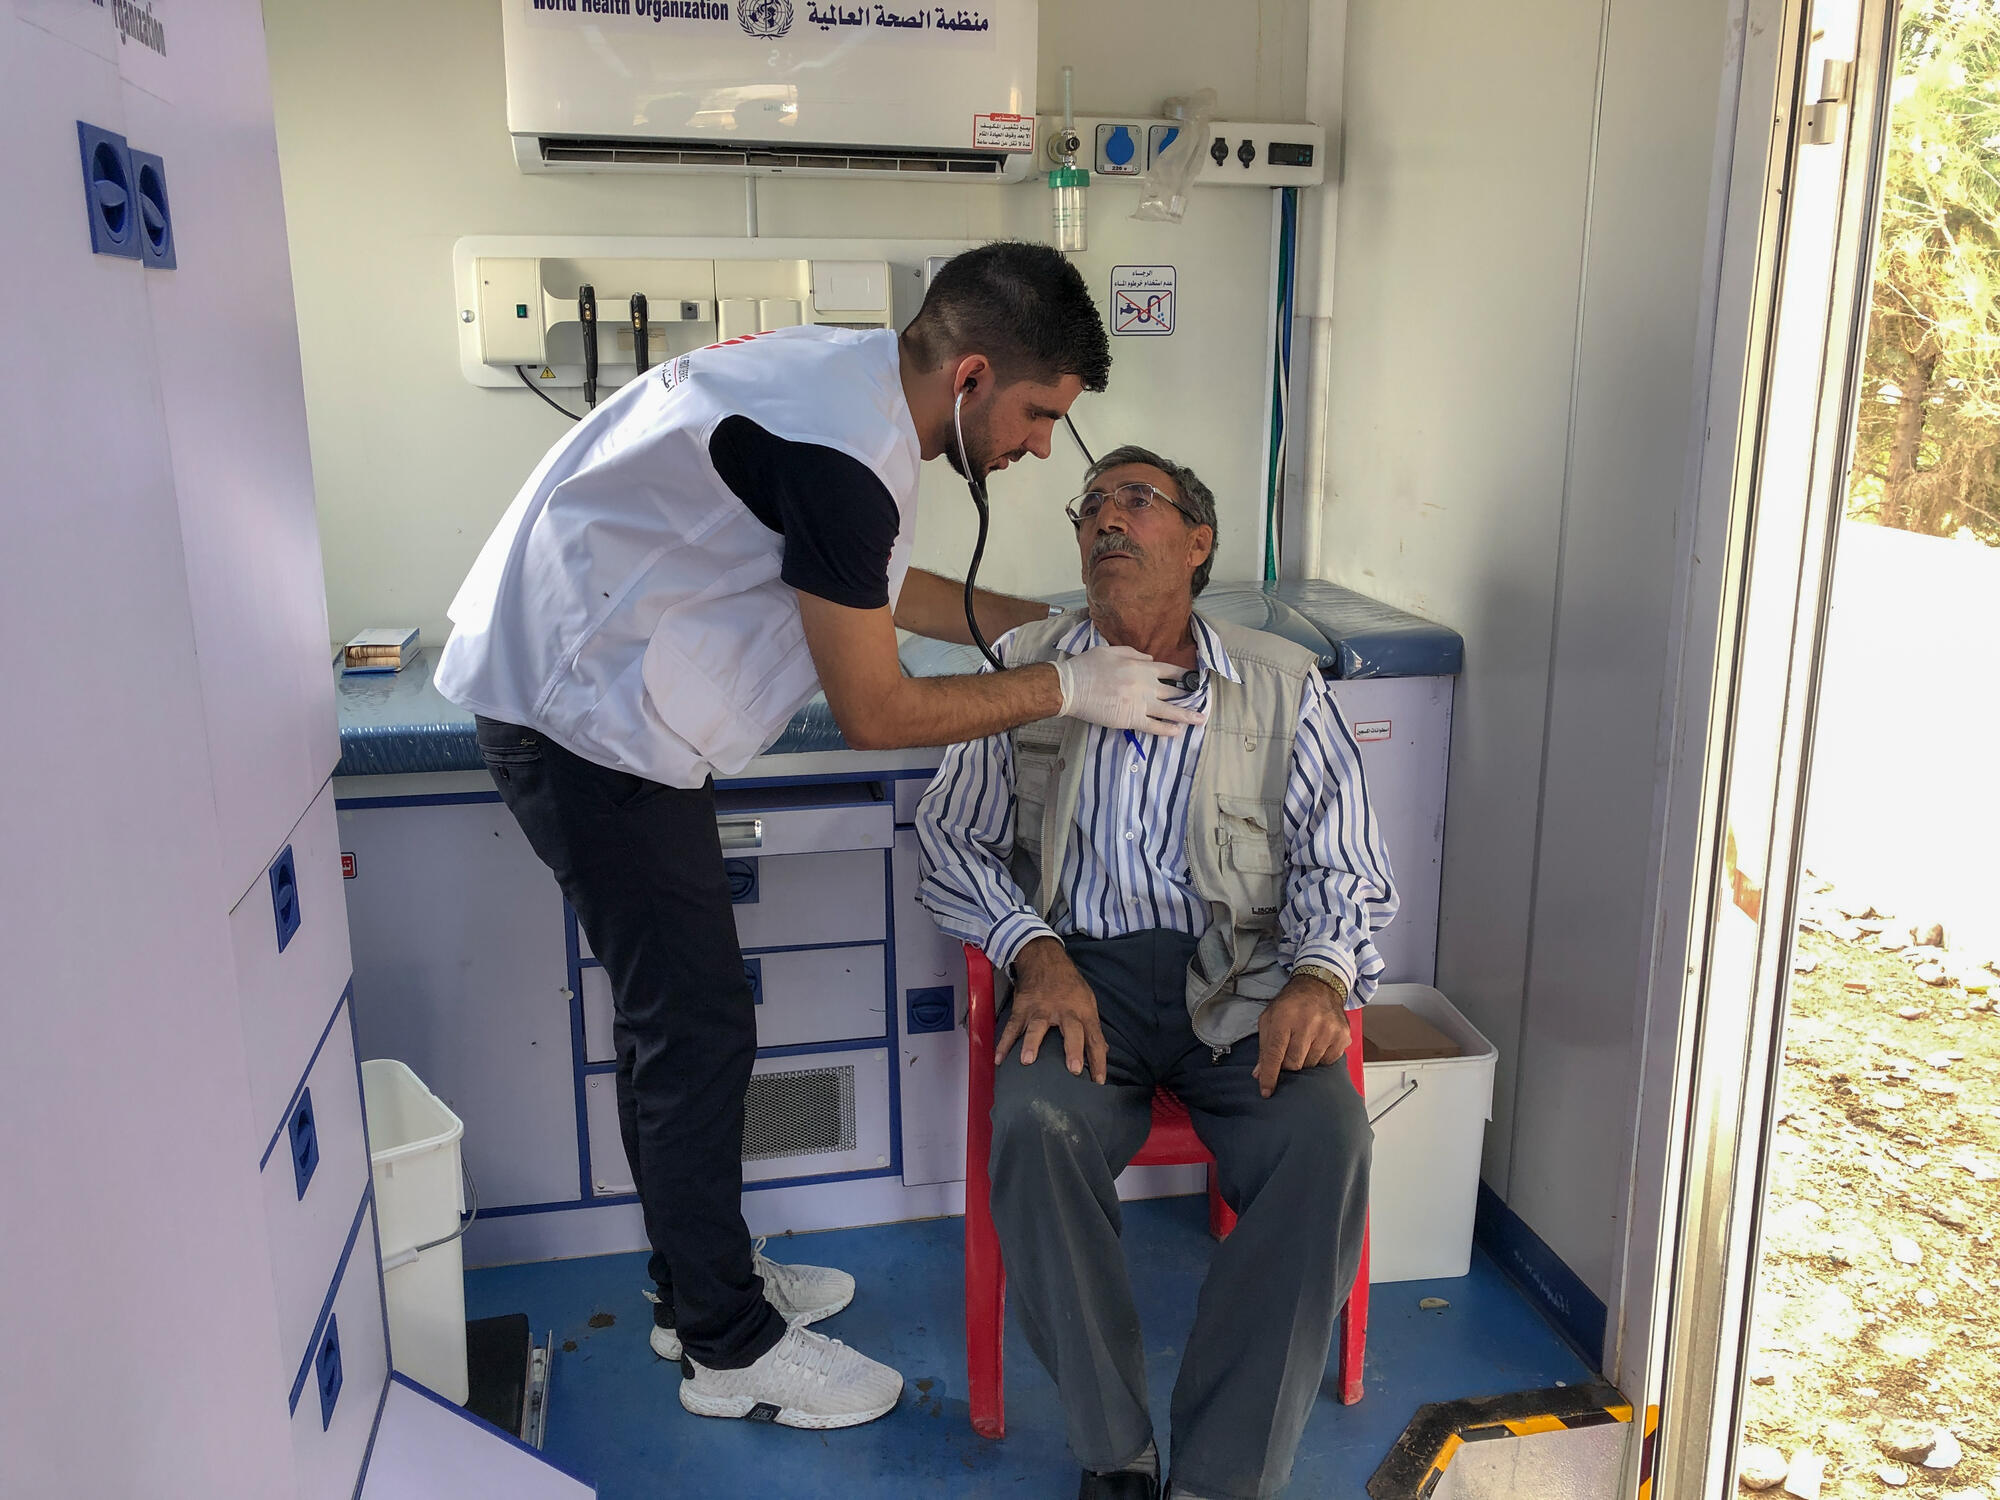 2019年10月。因當地人持續逃離敘利亞東北部的衝突地區，無國界醫生在伊拉克一個接近敘利亞邊境的營地展開醫療活動，接收難民。©MSF/Hassan Kamal Al-Deen